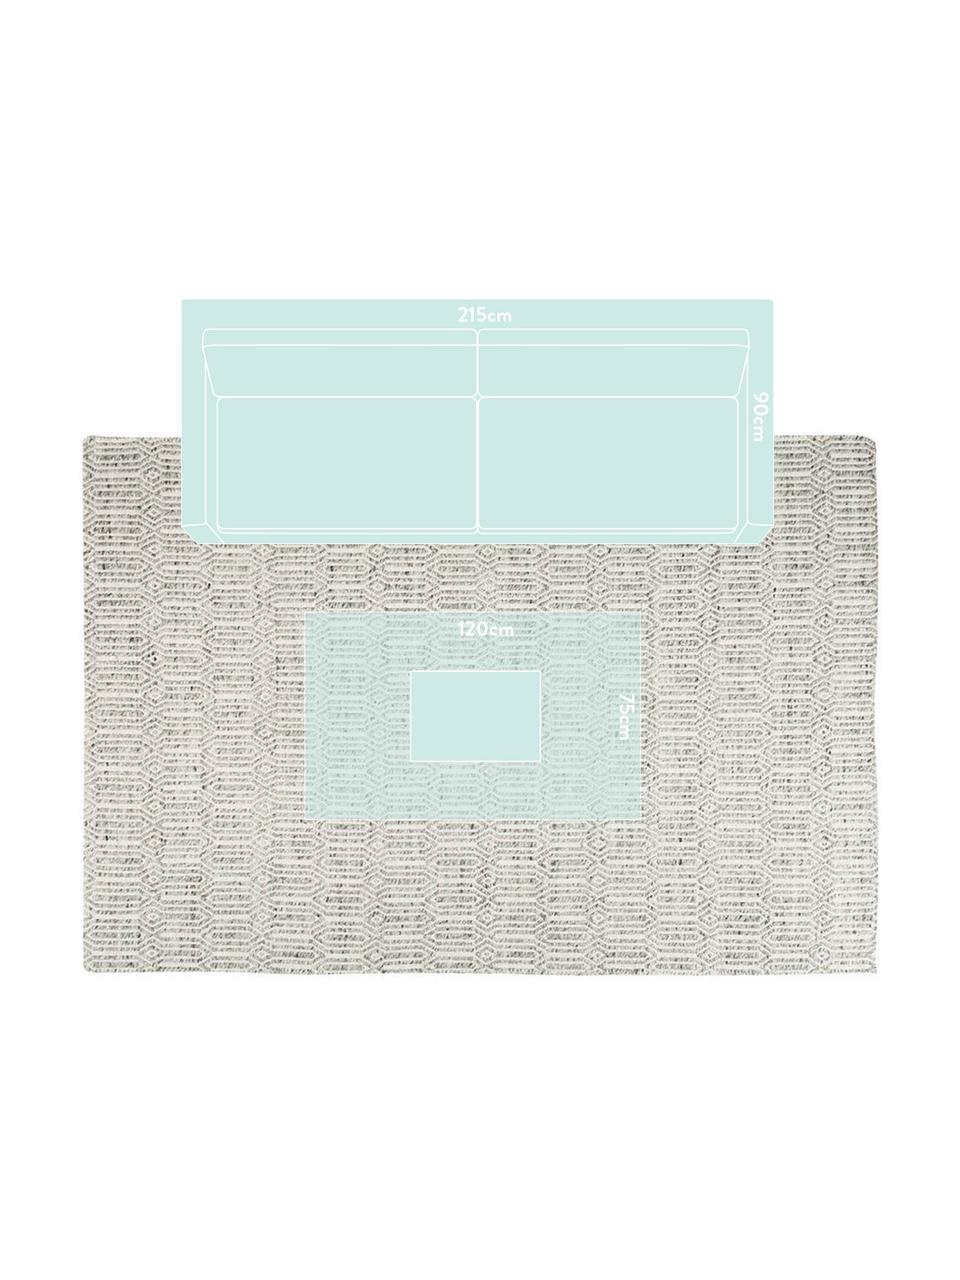 Tappeto tessuto a mano Justin, Avorio, grigio, L 200 x P 140 cm